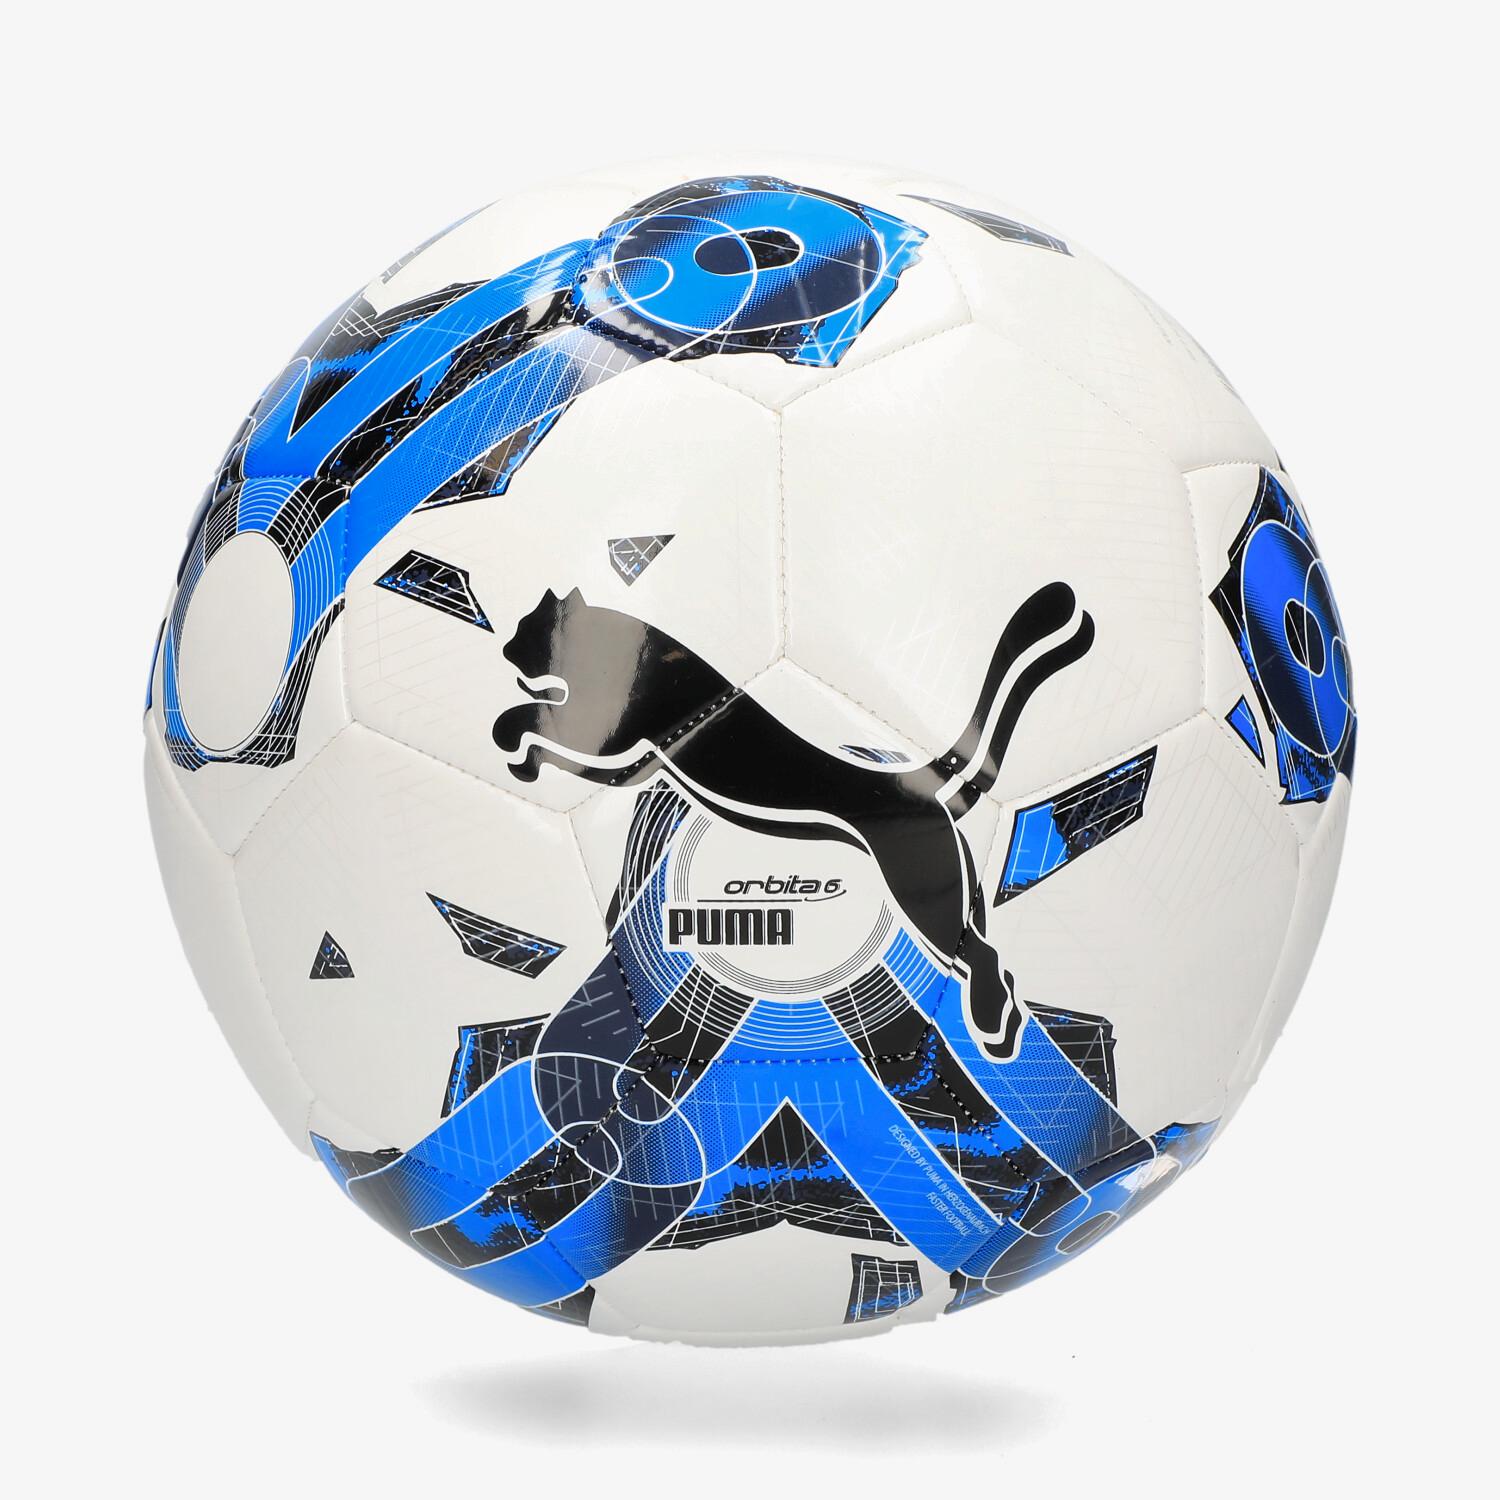 Puma y Liga F presentan el balón oficial Órbita para la Temporada 23/24